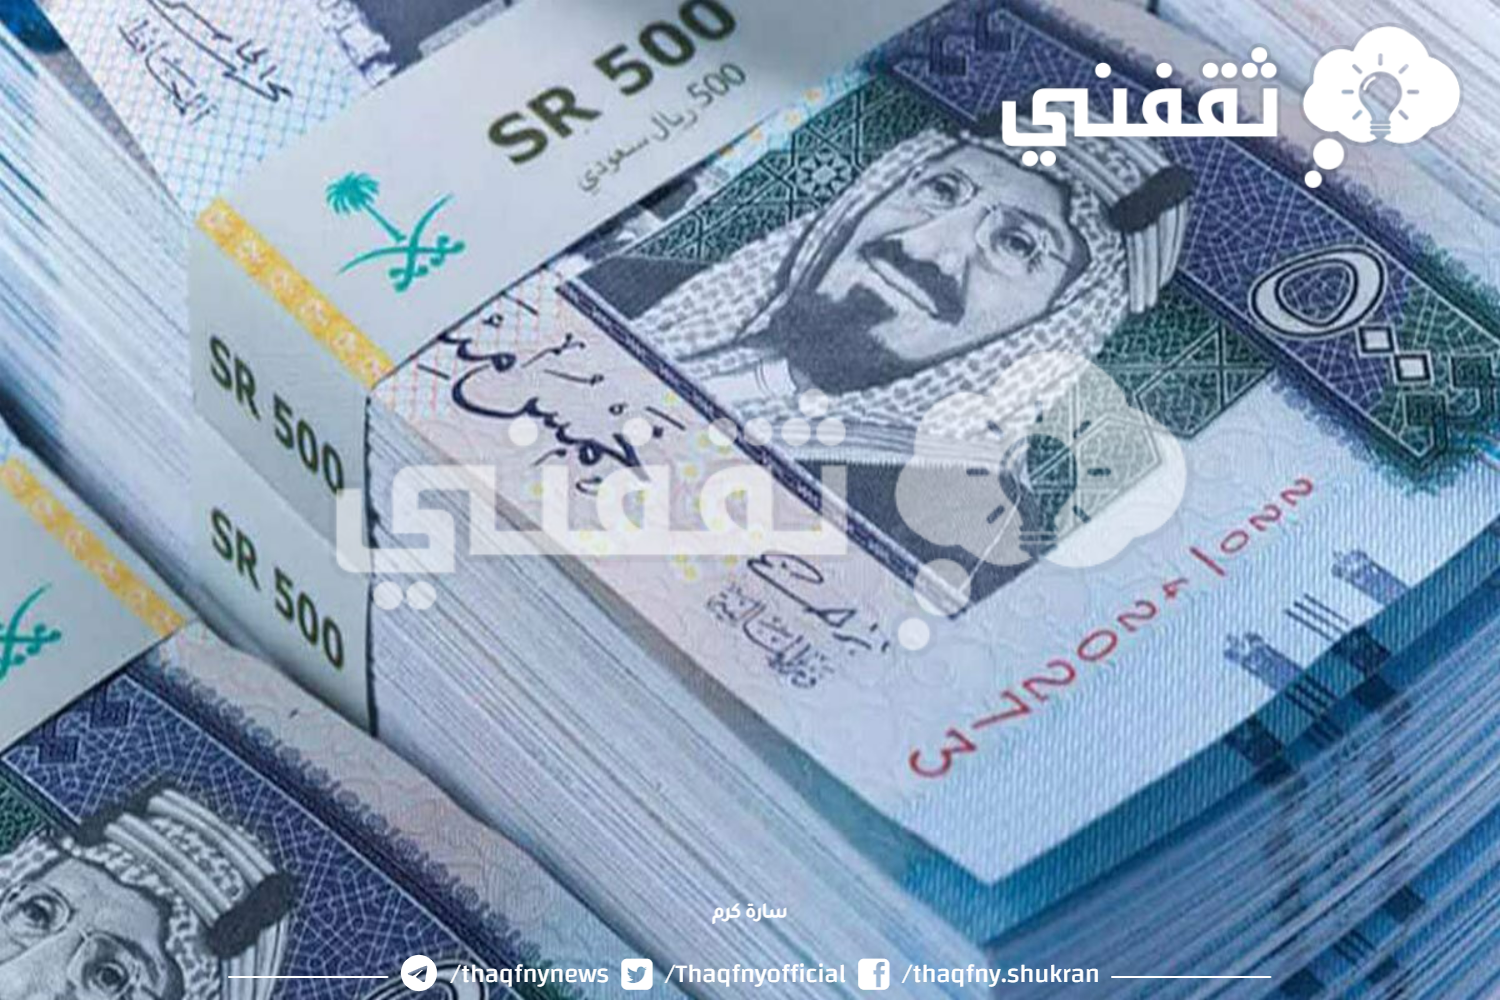 سلفة لأخر الشهر لسداد الديون والأقساط يقدمها مصرف الراجحي 1445 براتب 1900 ريال سعودي